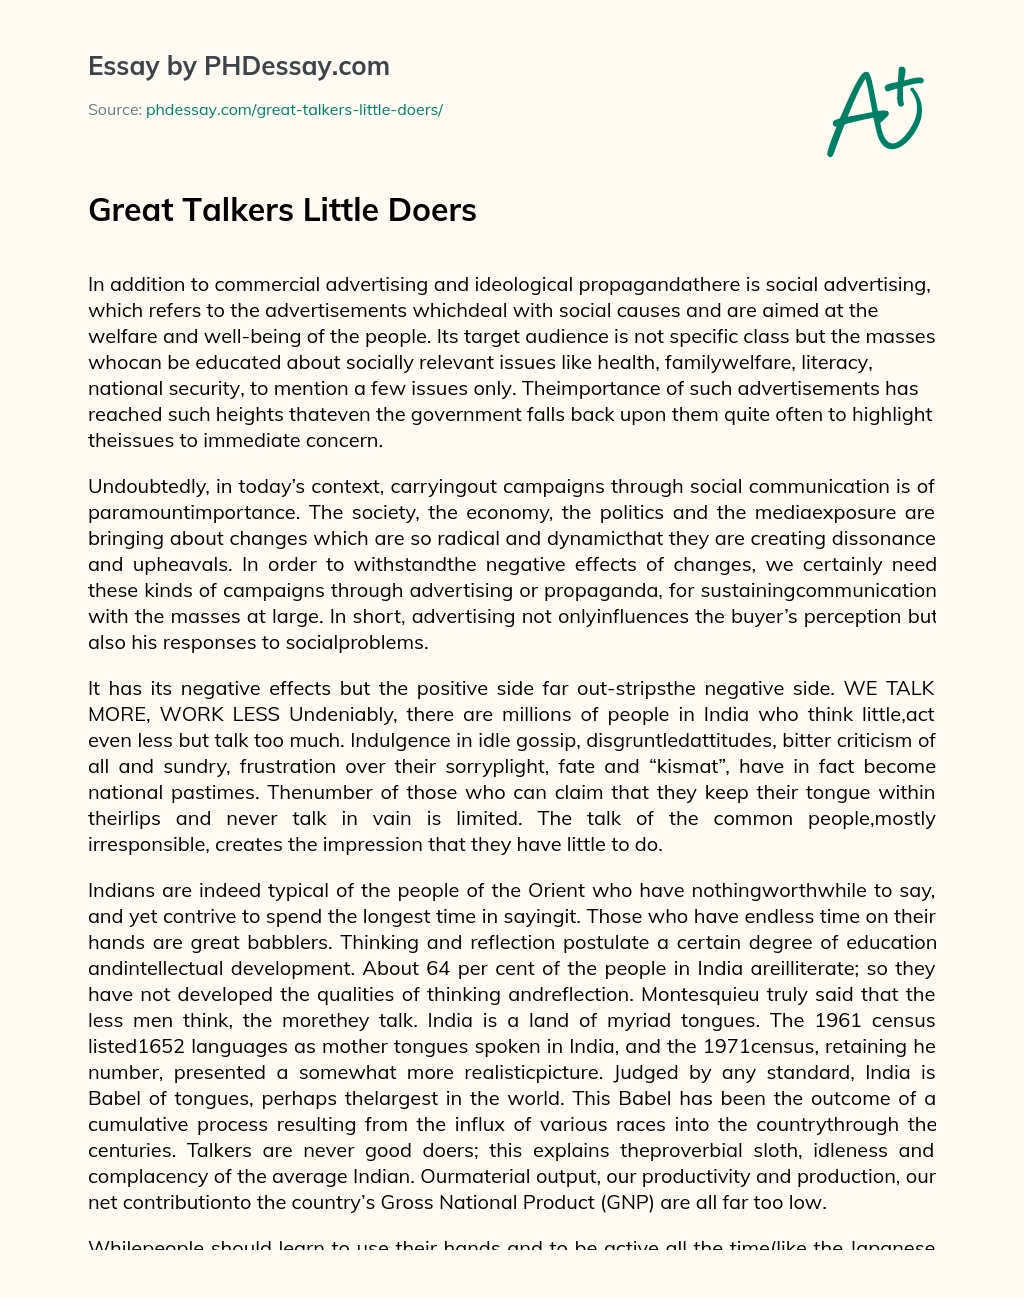 Great Talkers Little Doers essay